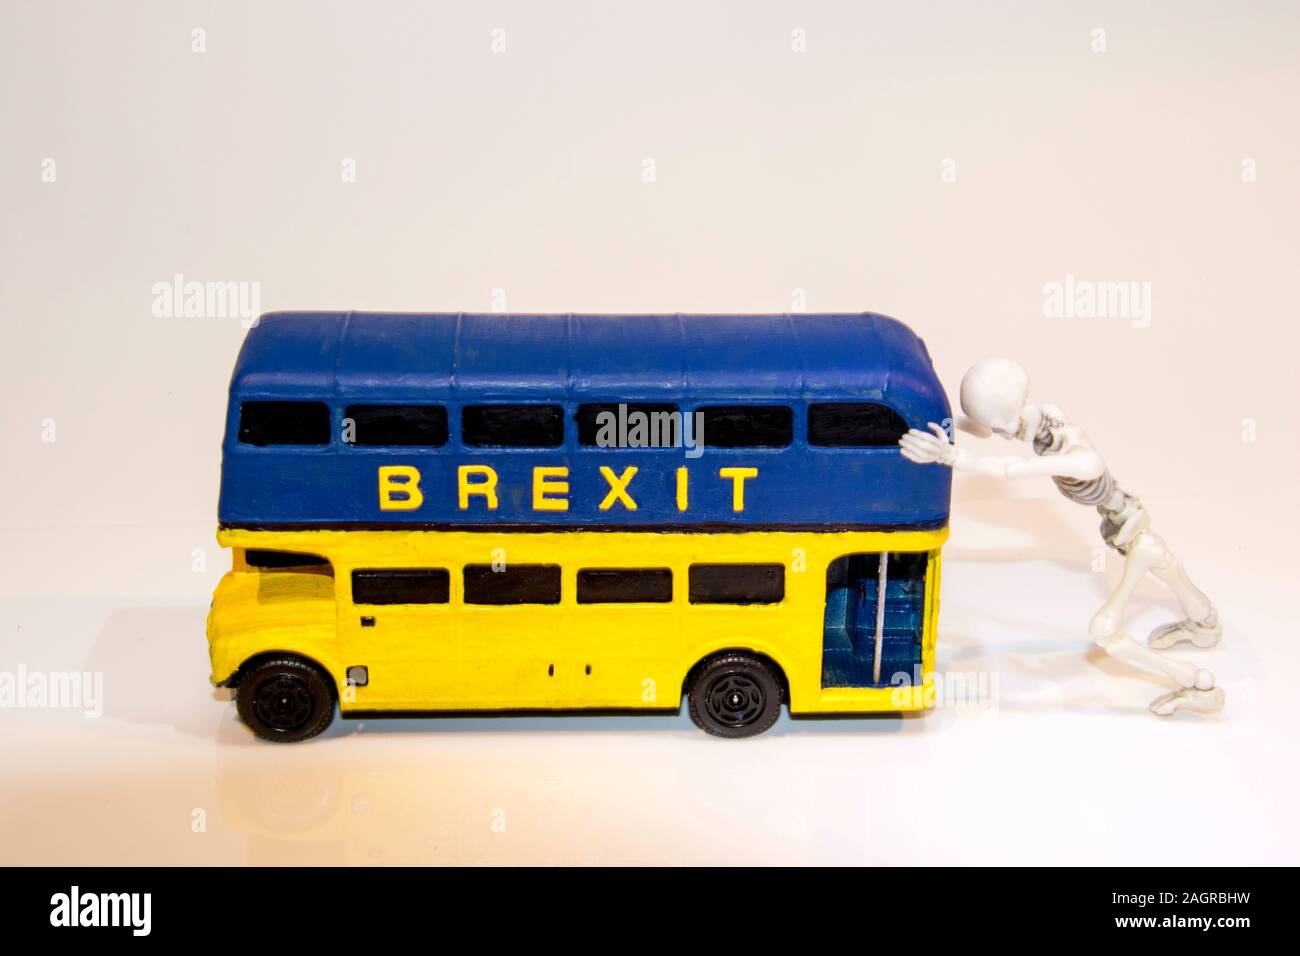 Einer der bekanntesten Teile des Brexit Abstimmung war der Bus, der die £ 350 Mio. auf der Seite zeigte. Hier ist ein Spin-off des Brexit Bus. Stockfoto